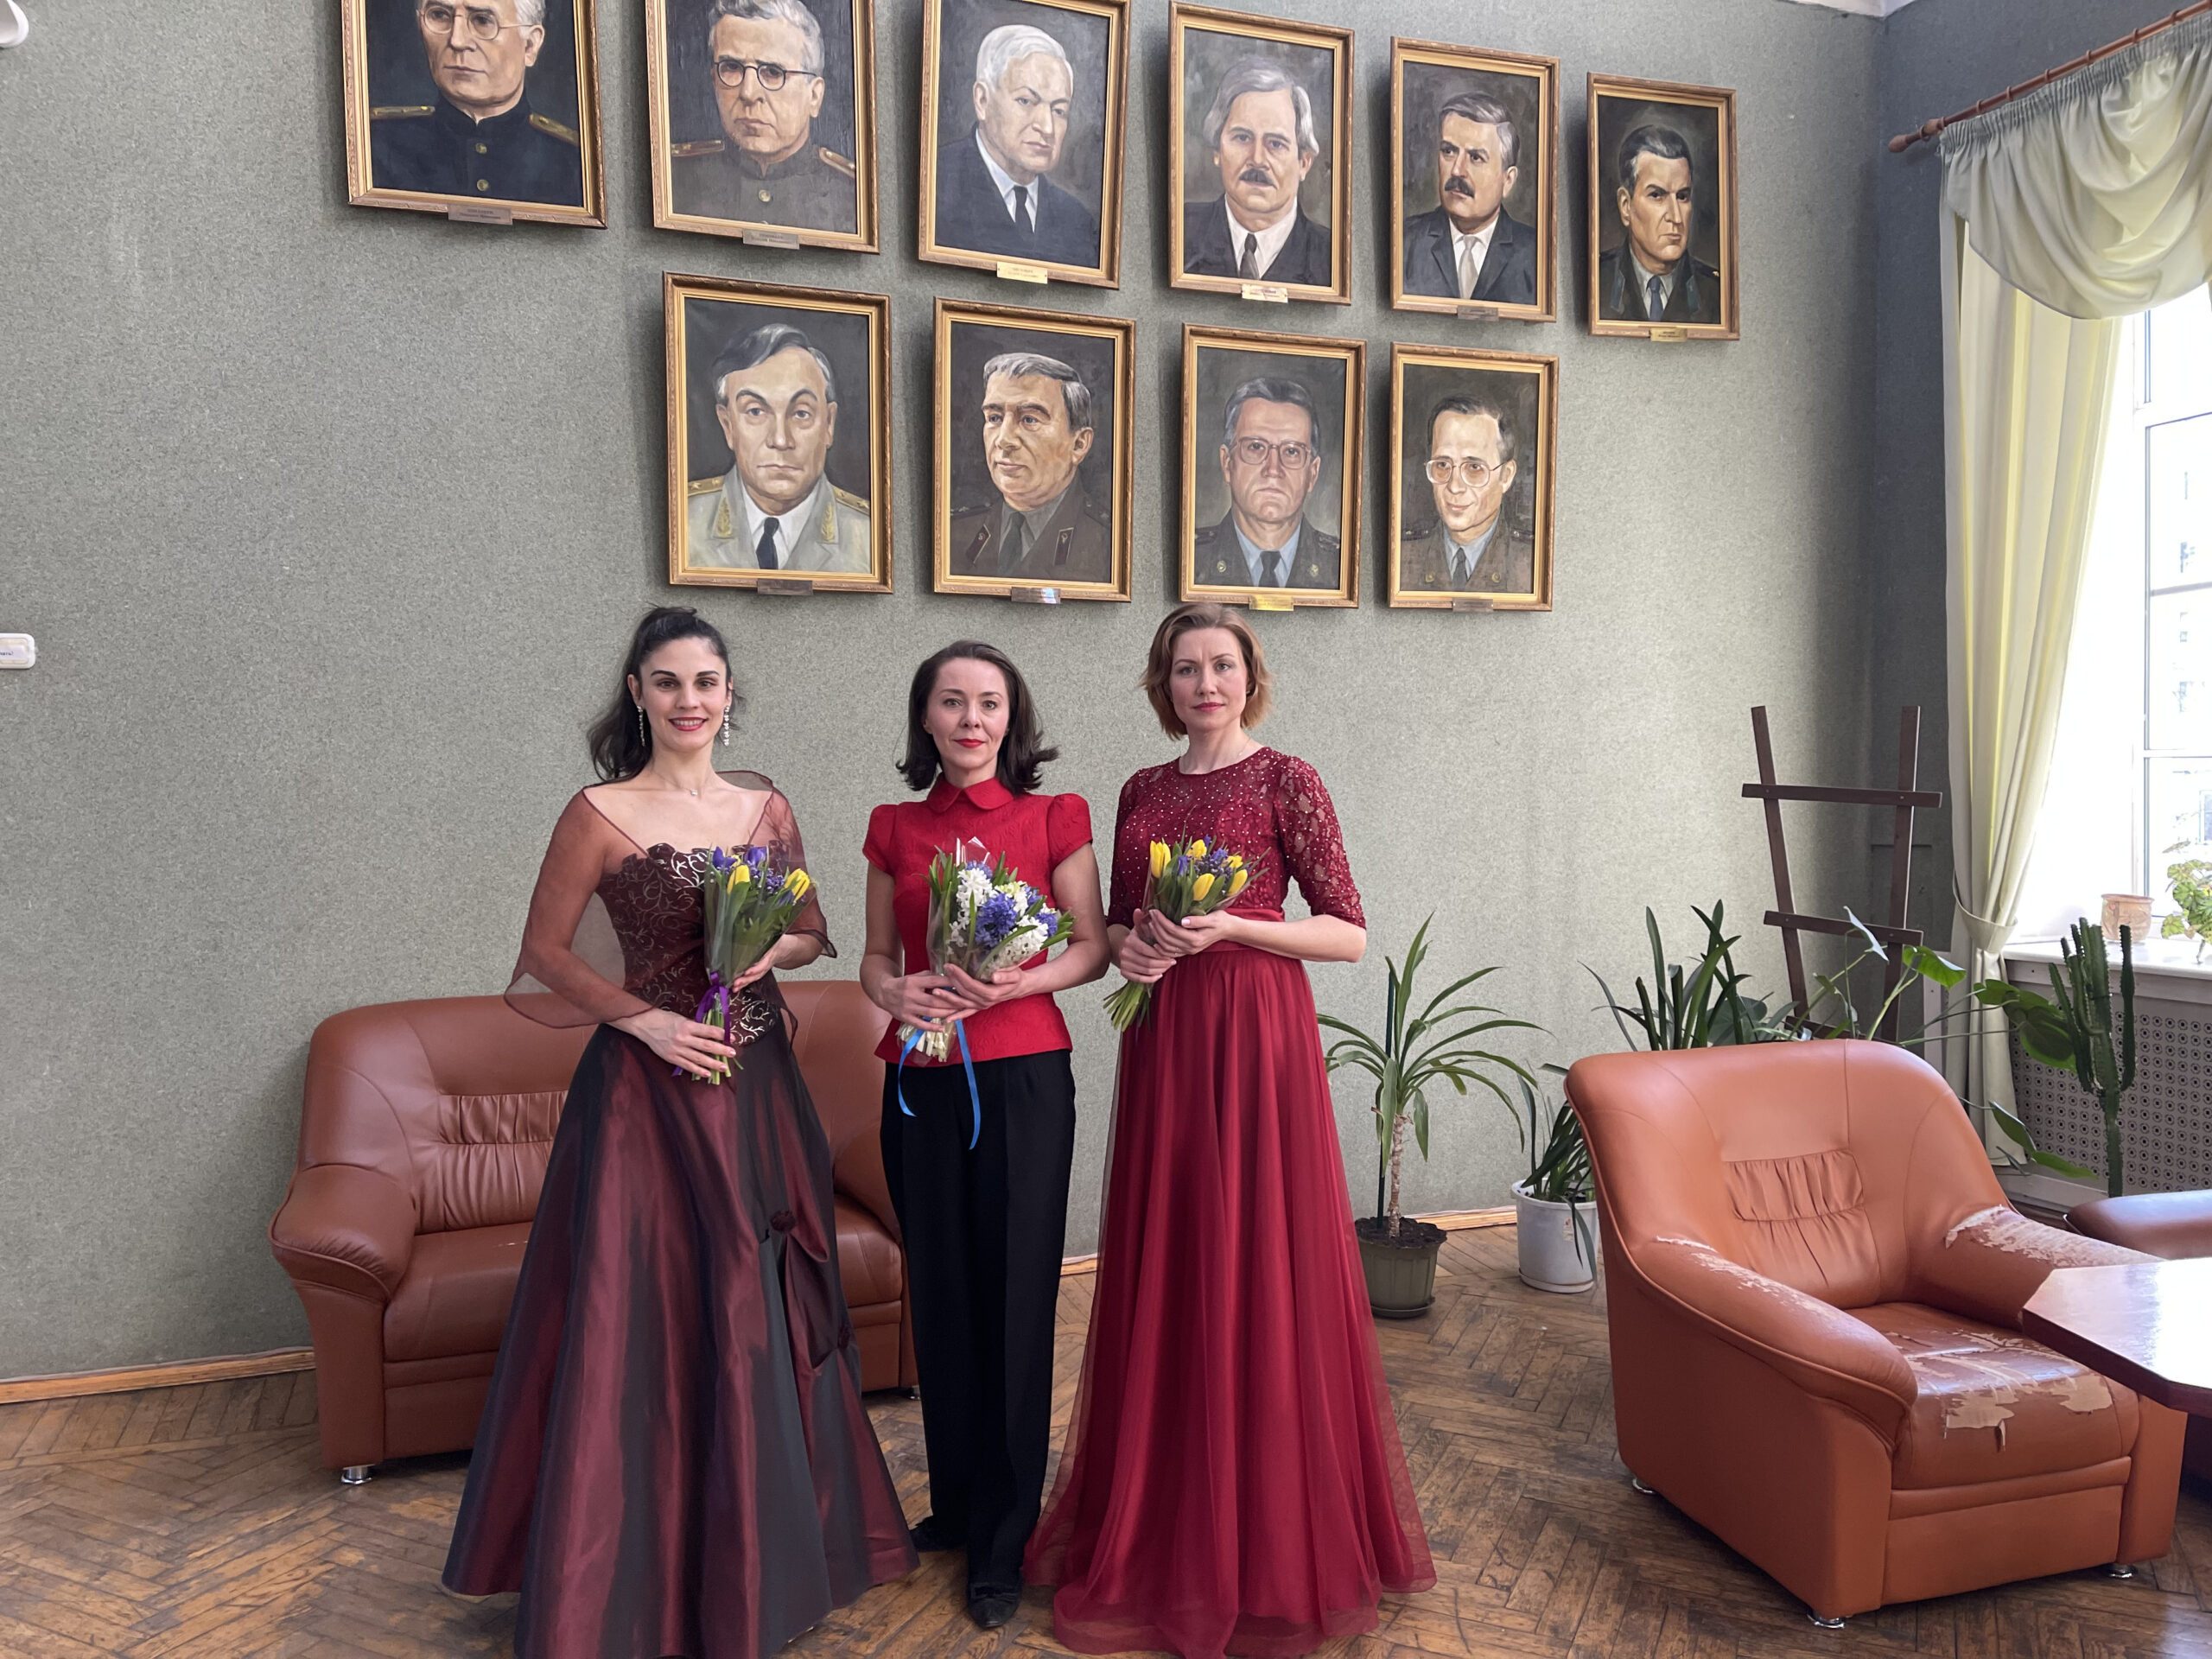 Музыкальный коллектив «Невская опера» дал праздничный концерт ко Дню защитника Отечества для пациентов и сотрудников Военно-медицинской академии